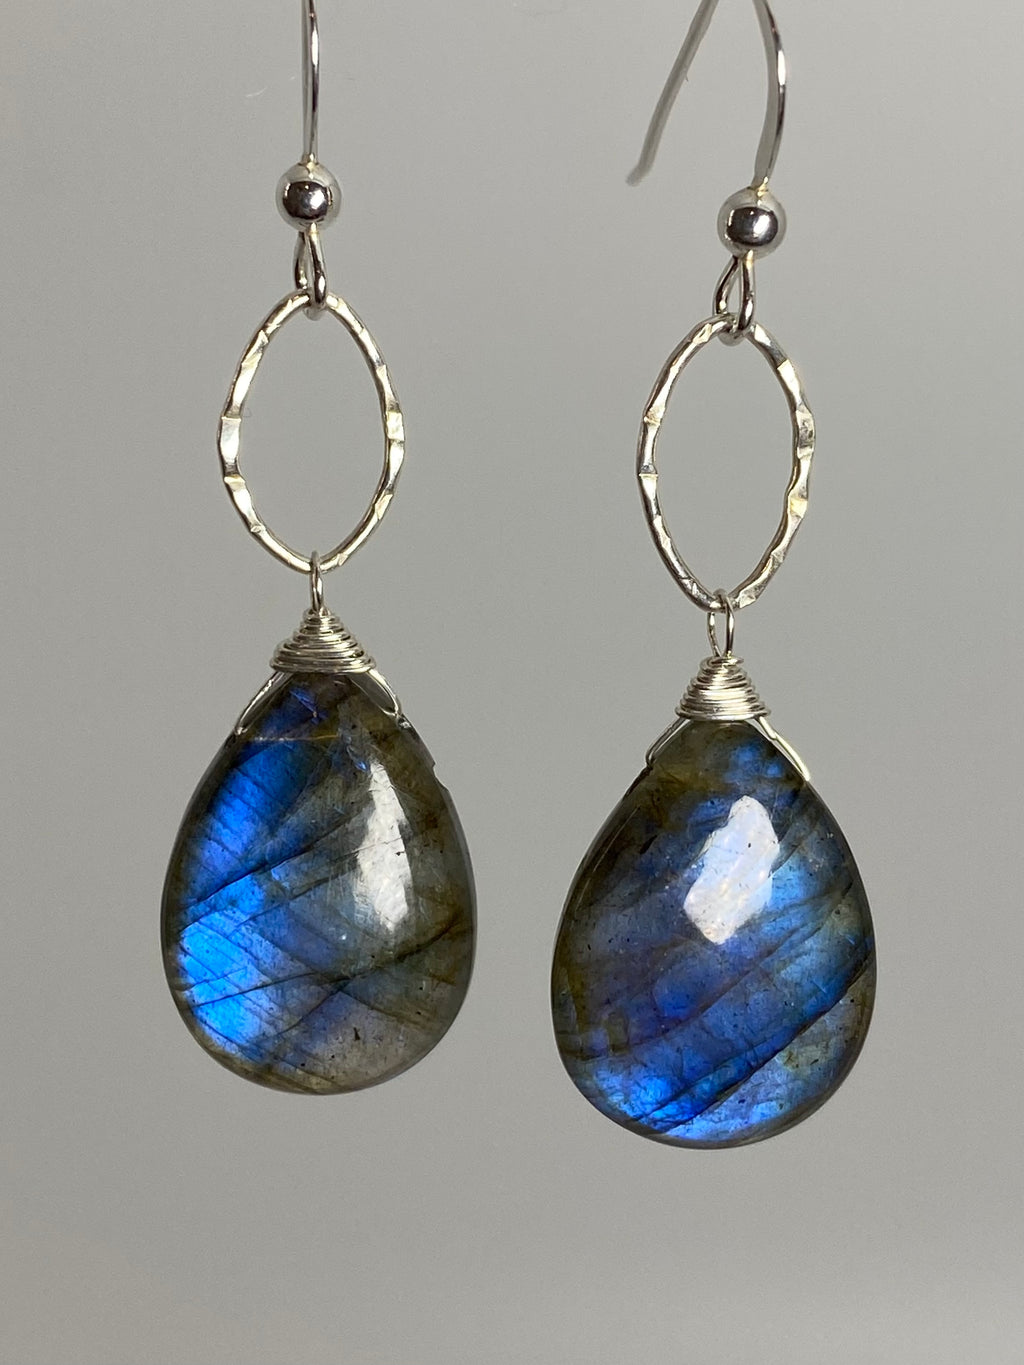 Blue Labradorite Drop Earrings